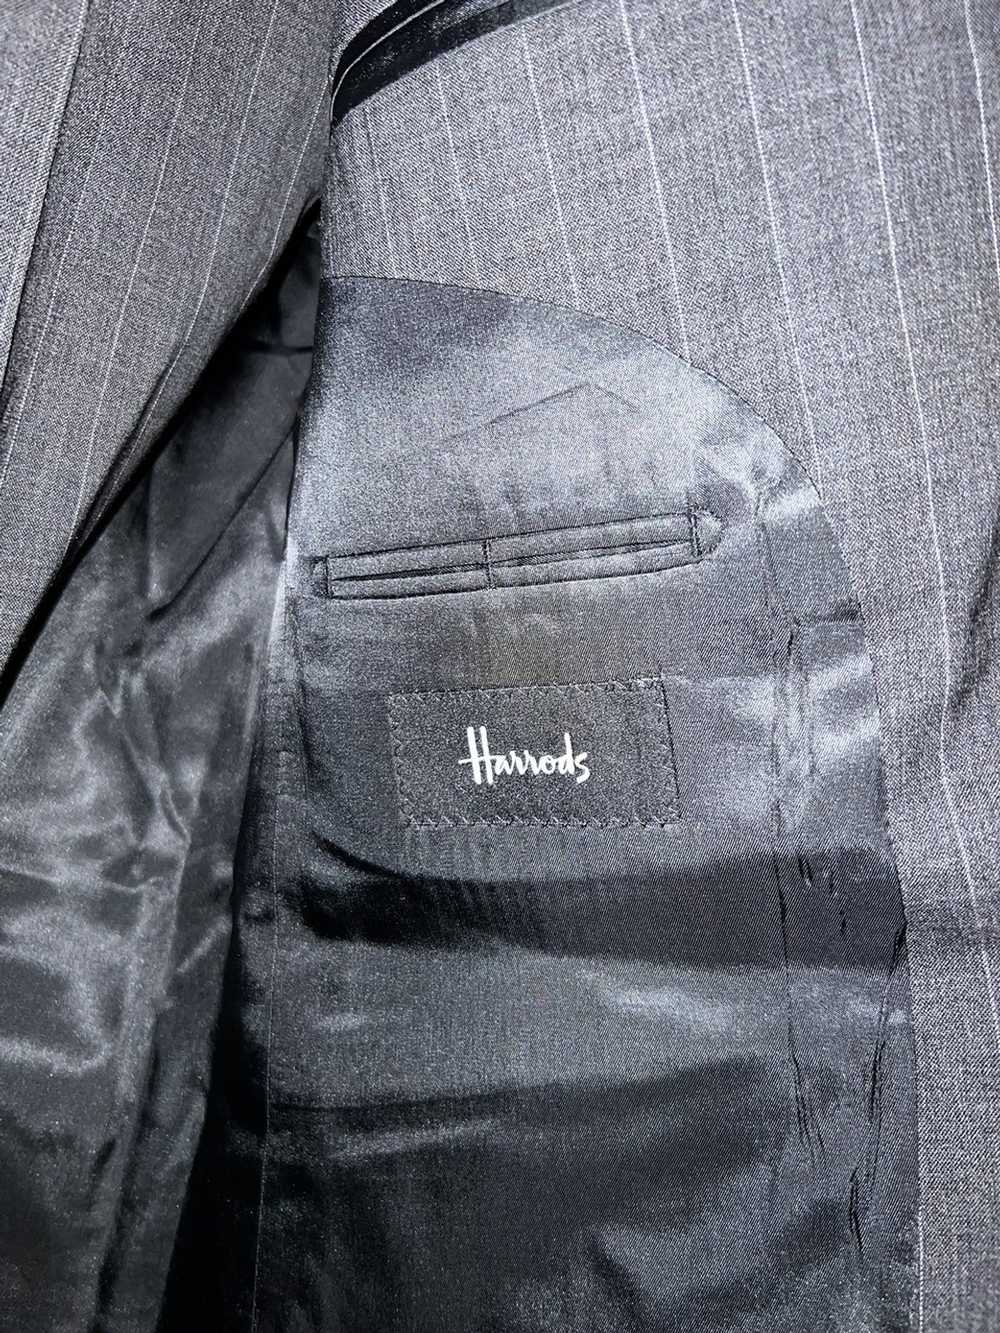 Harrods Harrods Pinstripe Suit - image 2